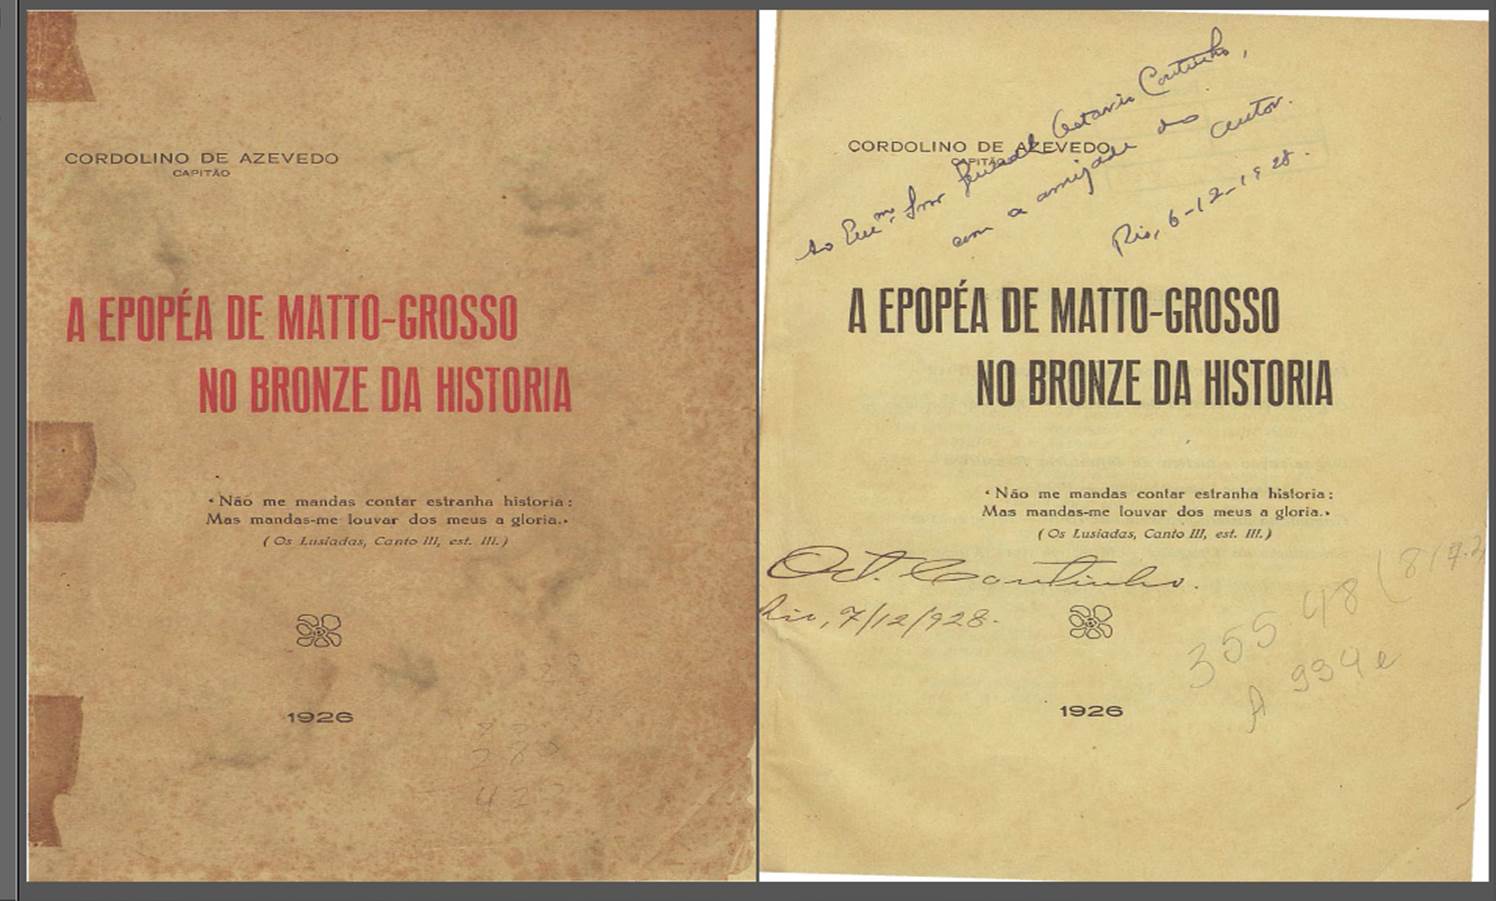 A EPOPEIA DE MATO GROSSO NO BRONZE DA HISTORIA, 1926